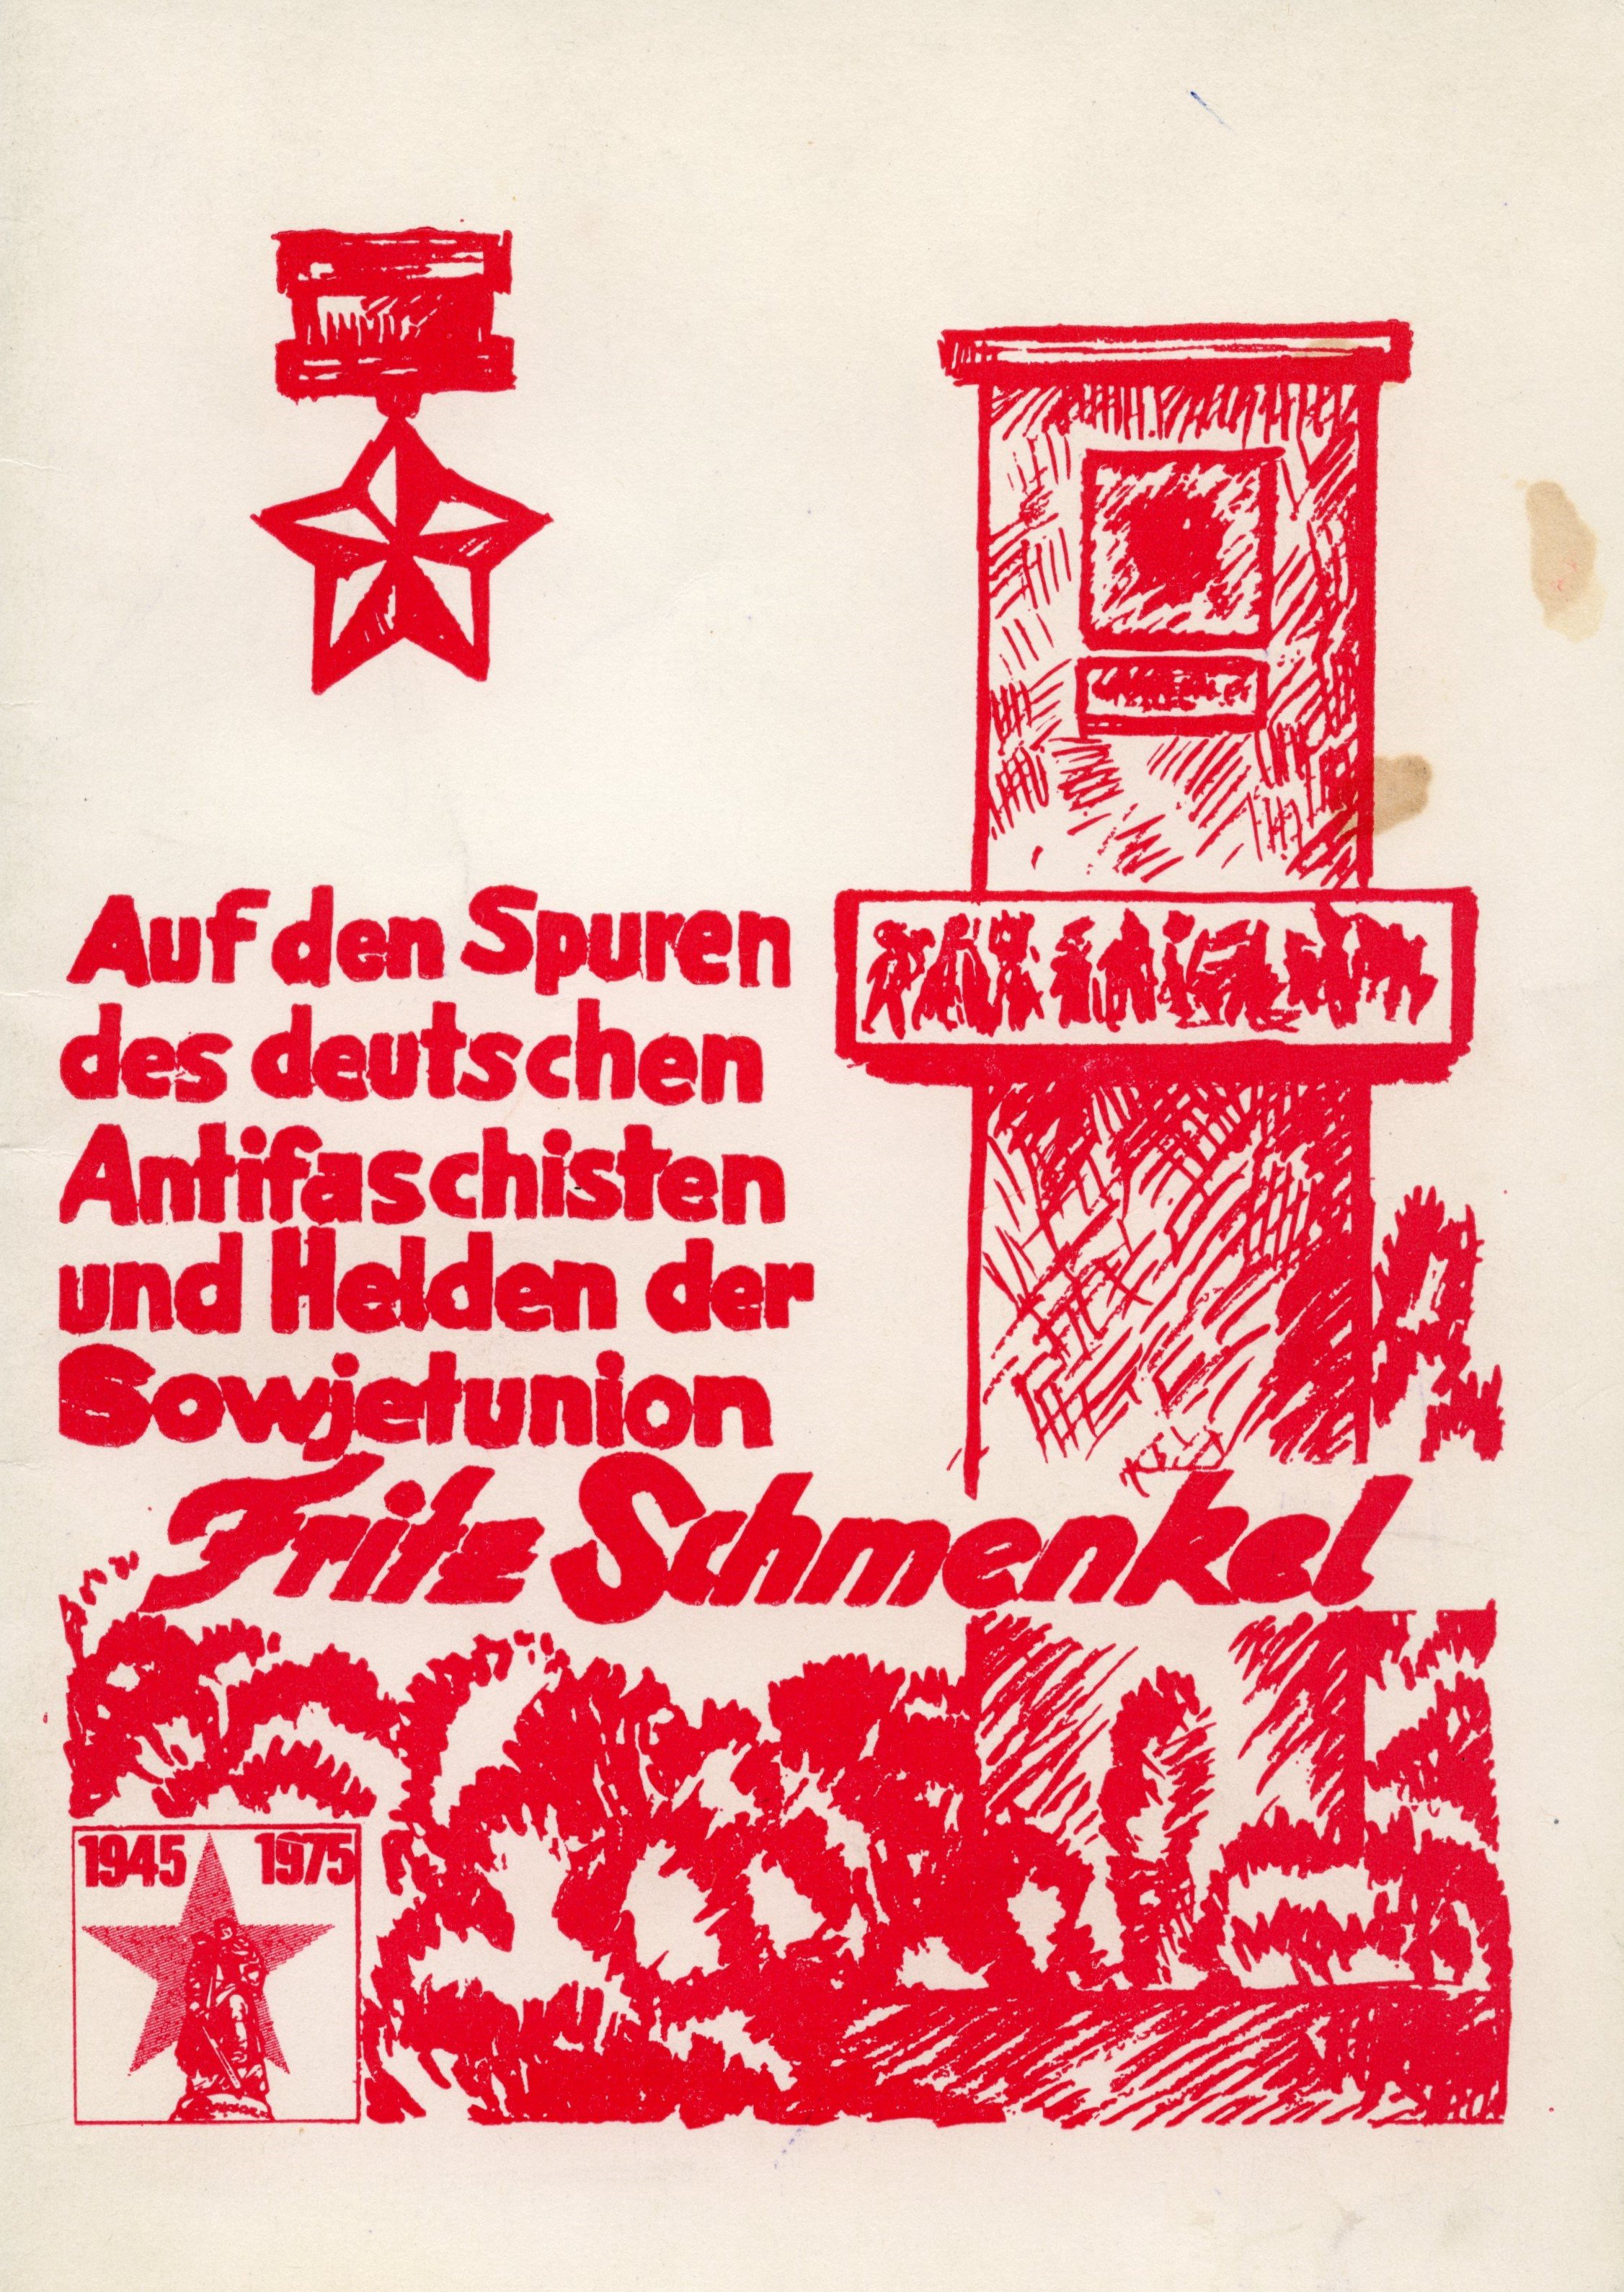 Broschüre: "Auf den Spuren des deutschen Antifaschisten und Helden der Sowjetunion, Fritz Schmenkel". (Museum Berlin-Karlshorst CC BY-NC-SA)